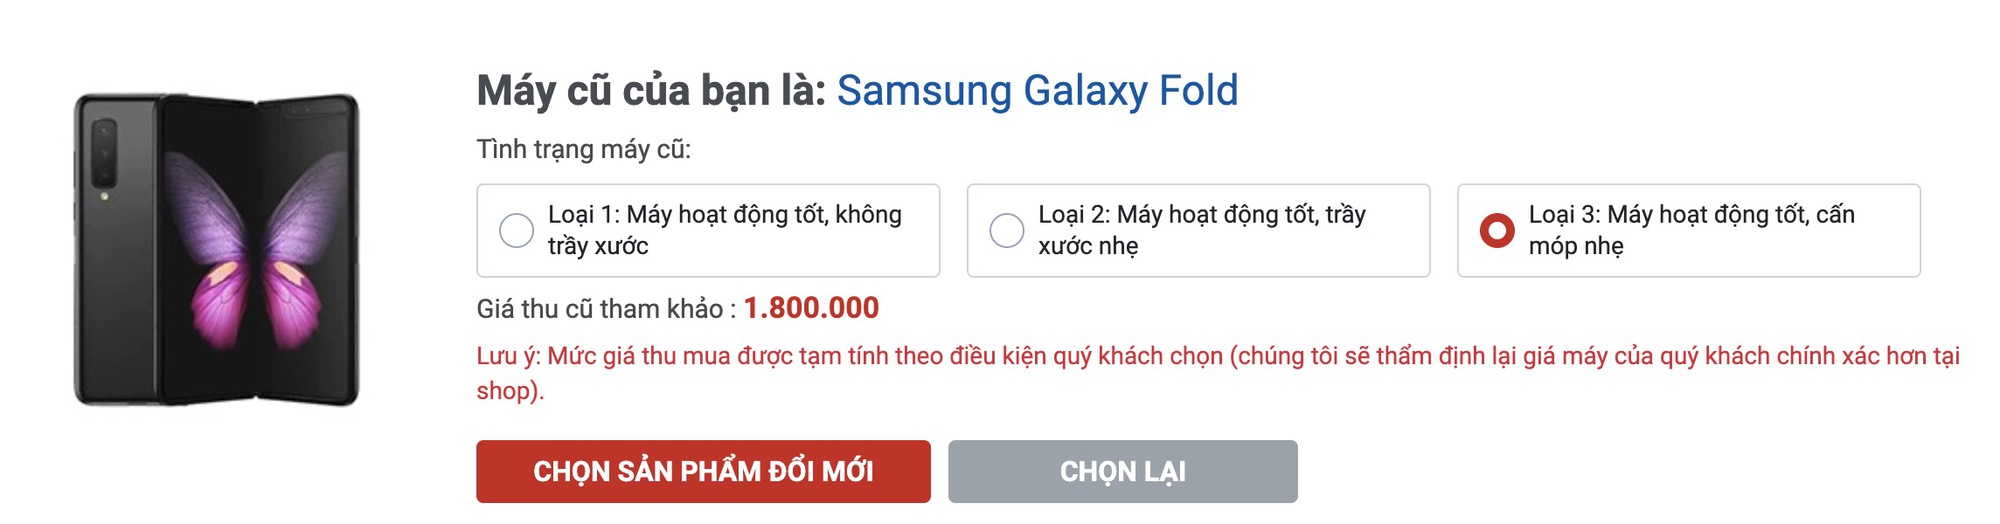 Độc lạ Samsung: Smartphone từng có giá 50 triệu nay mất 99% giá trị khi thu cũ đổi mới - Ảnh 3.